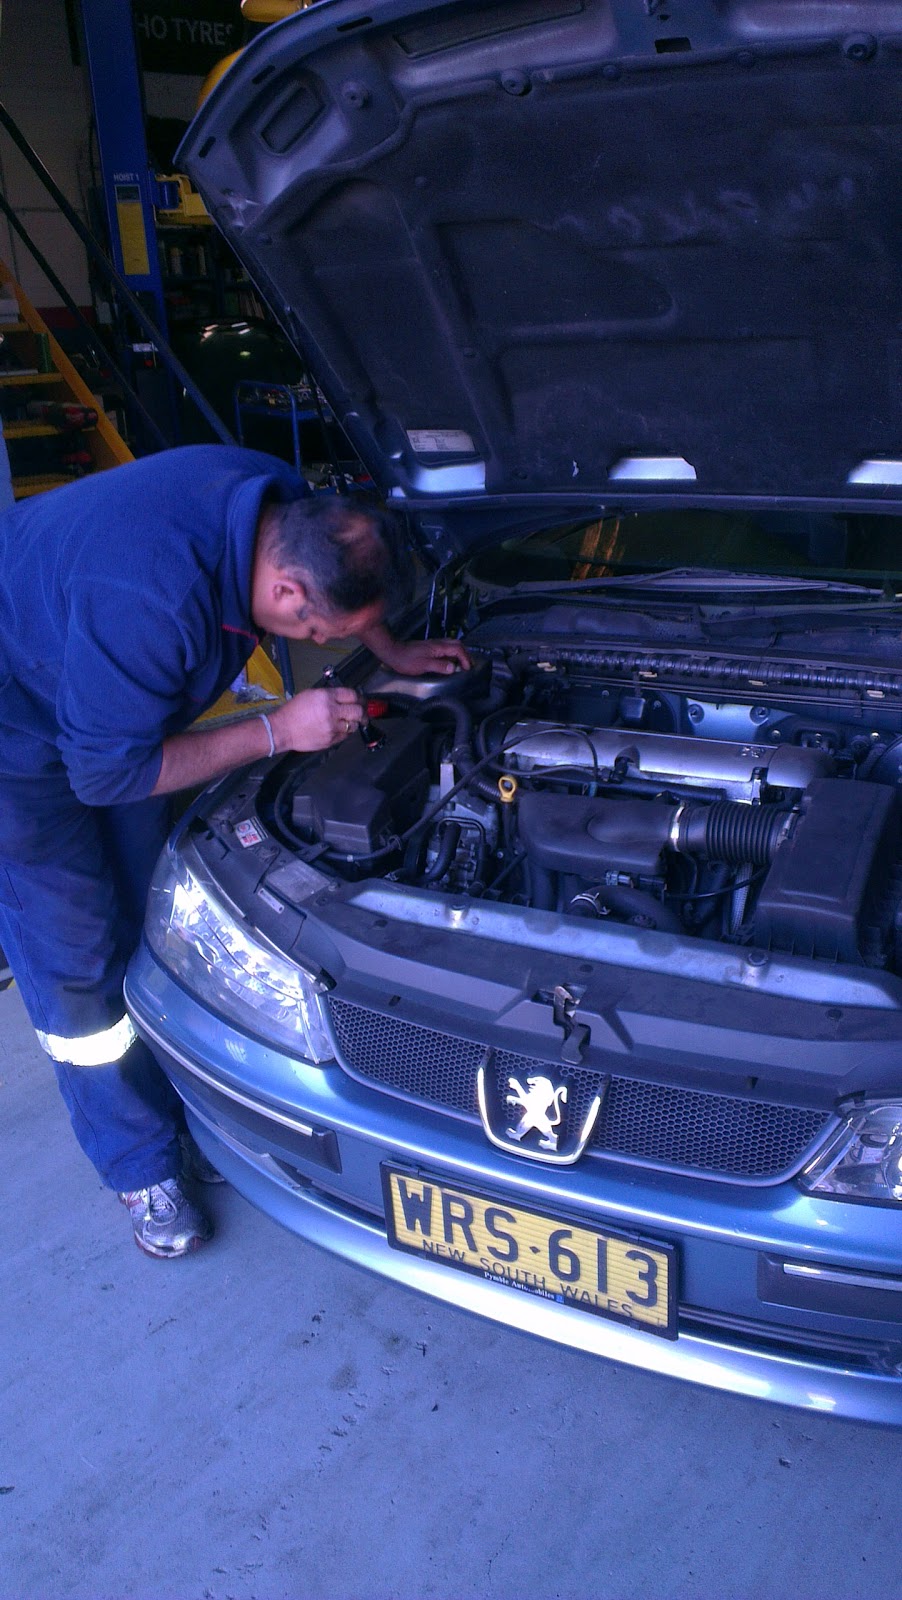 Genuine Auto Repairs | car repair | 7/2 Stanton Rd, Seven Hills NSW 2147, Australia | 0286787851 OR +61 2 8678 7851